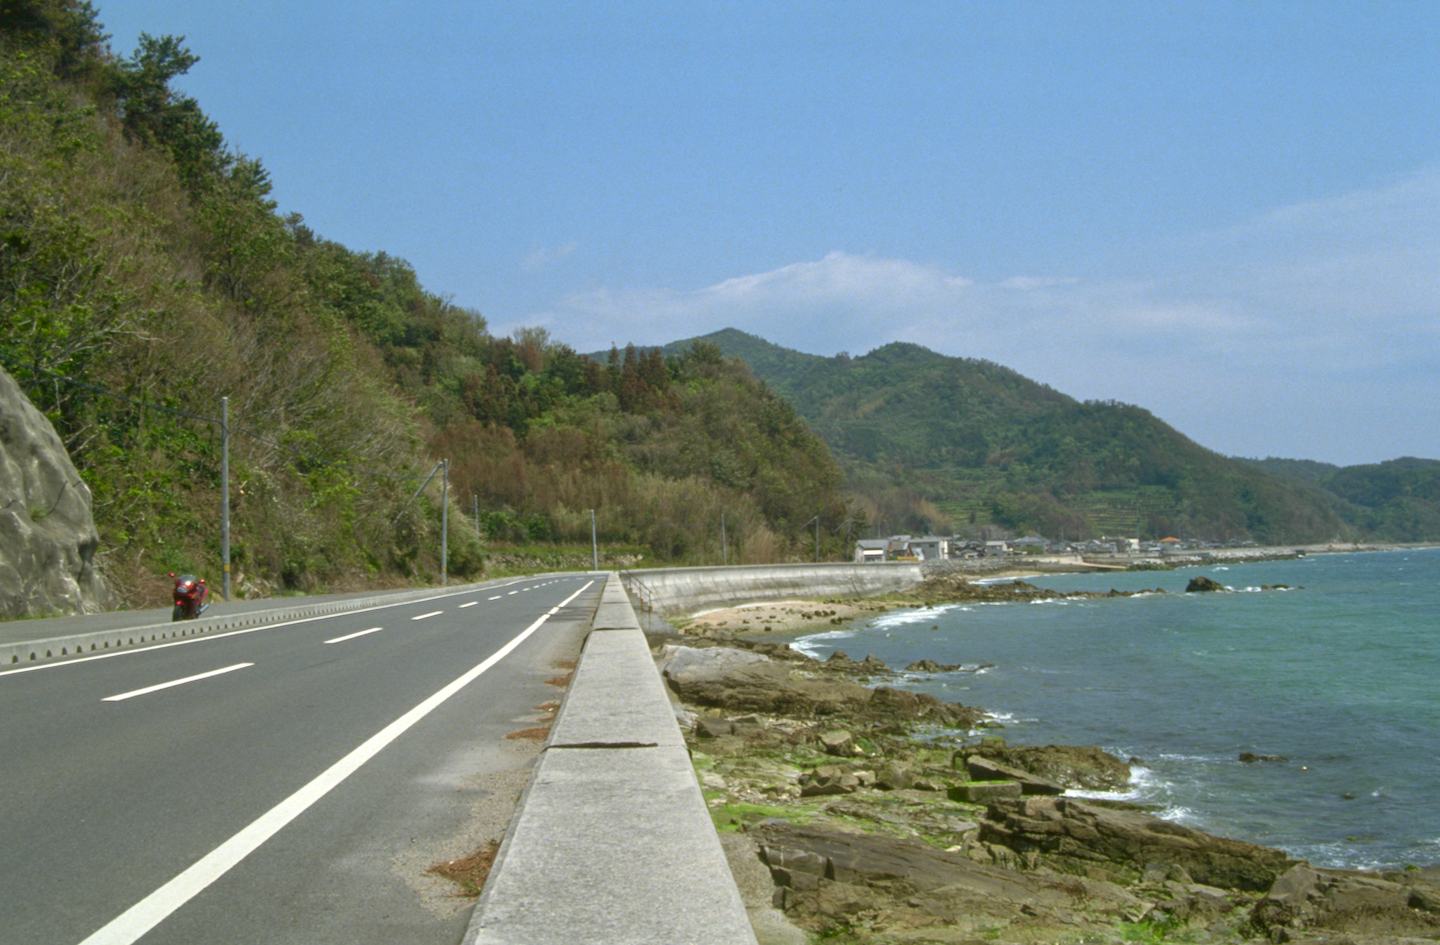 Yamaguchi pref. road 4